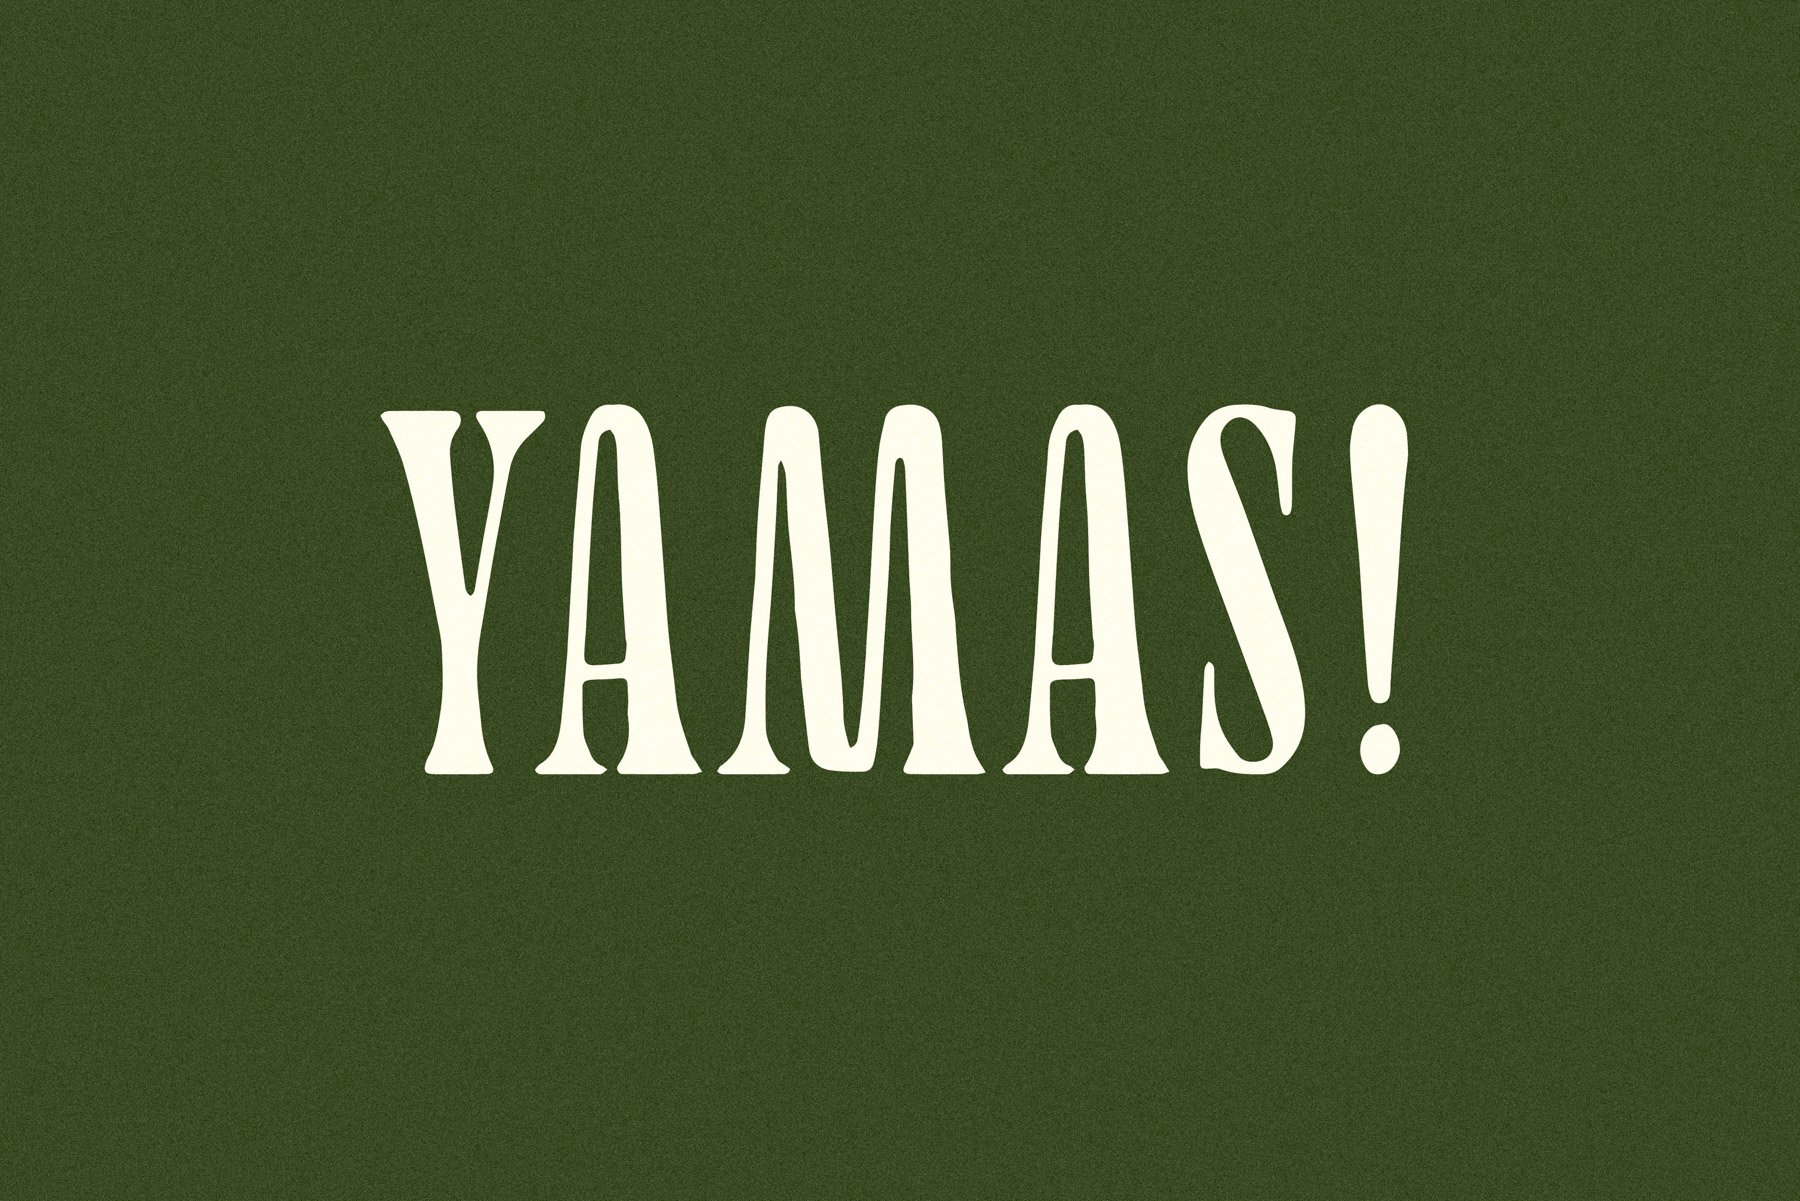 Yamas | A Soft Modern Serif Font cover image.